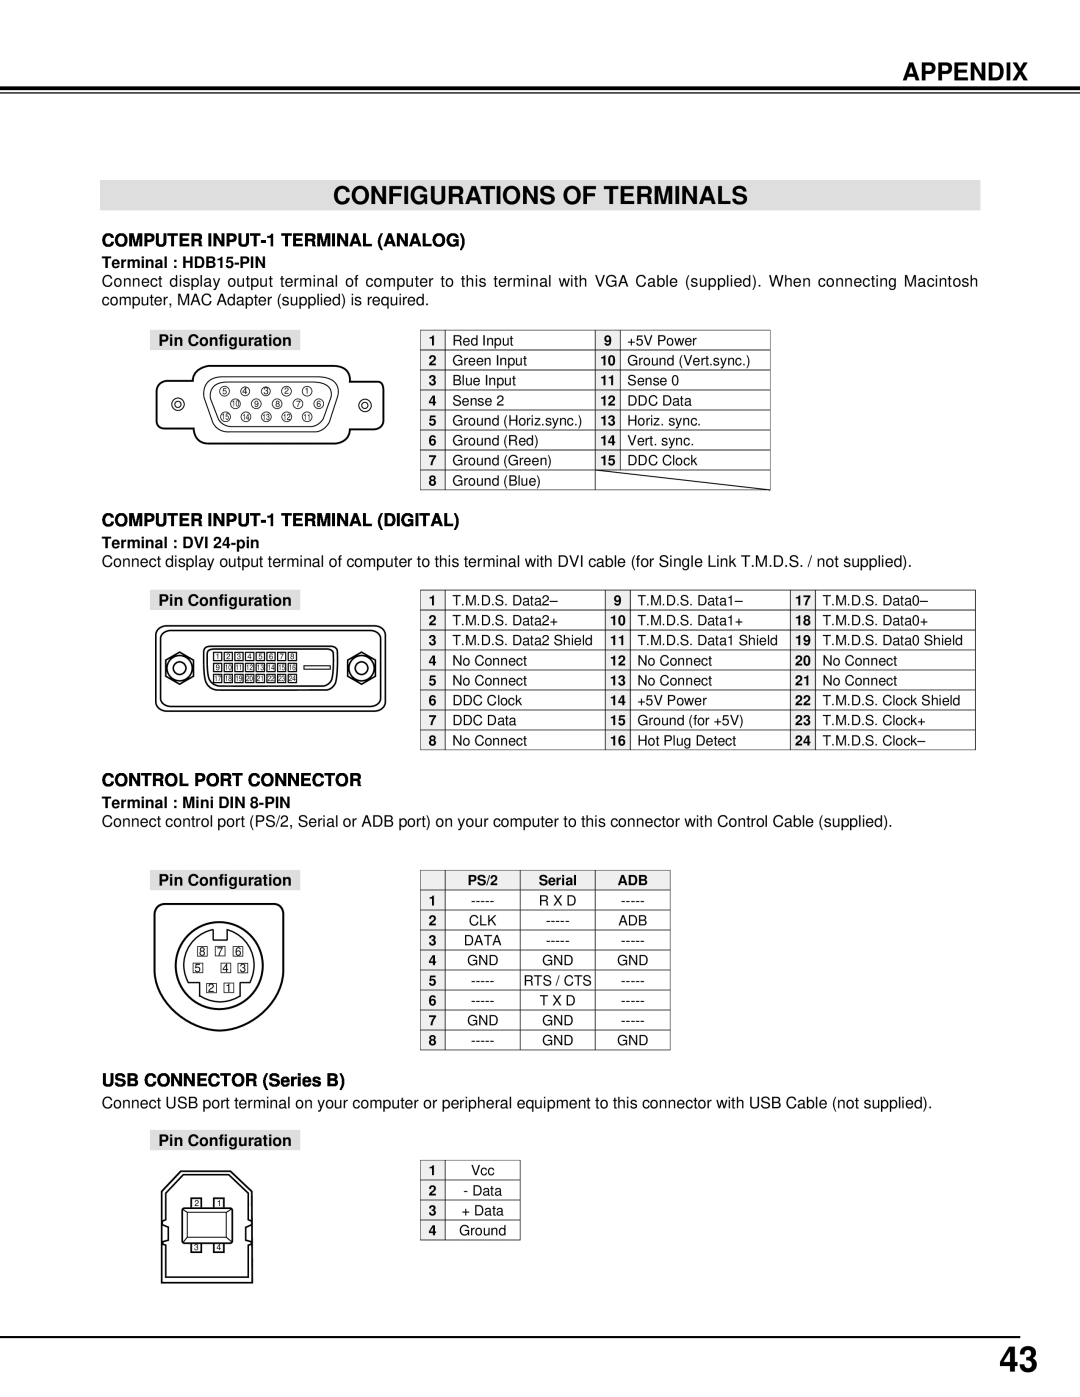 BOXLIGHT MP-42T manual Appendix Configurations Of Terminals, Terminal HDB15-PIN, Pin Configuration, Terminal DVI 24-pin 